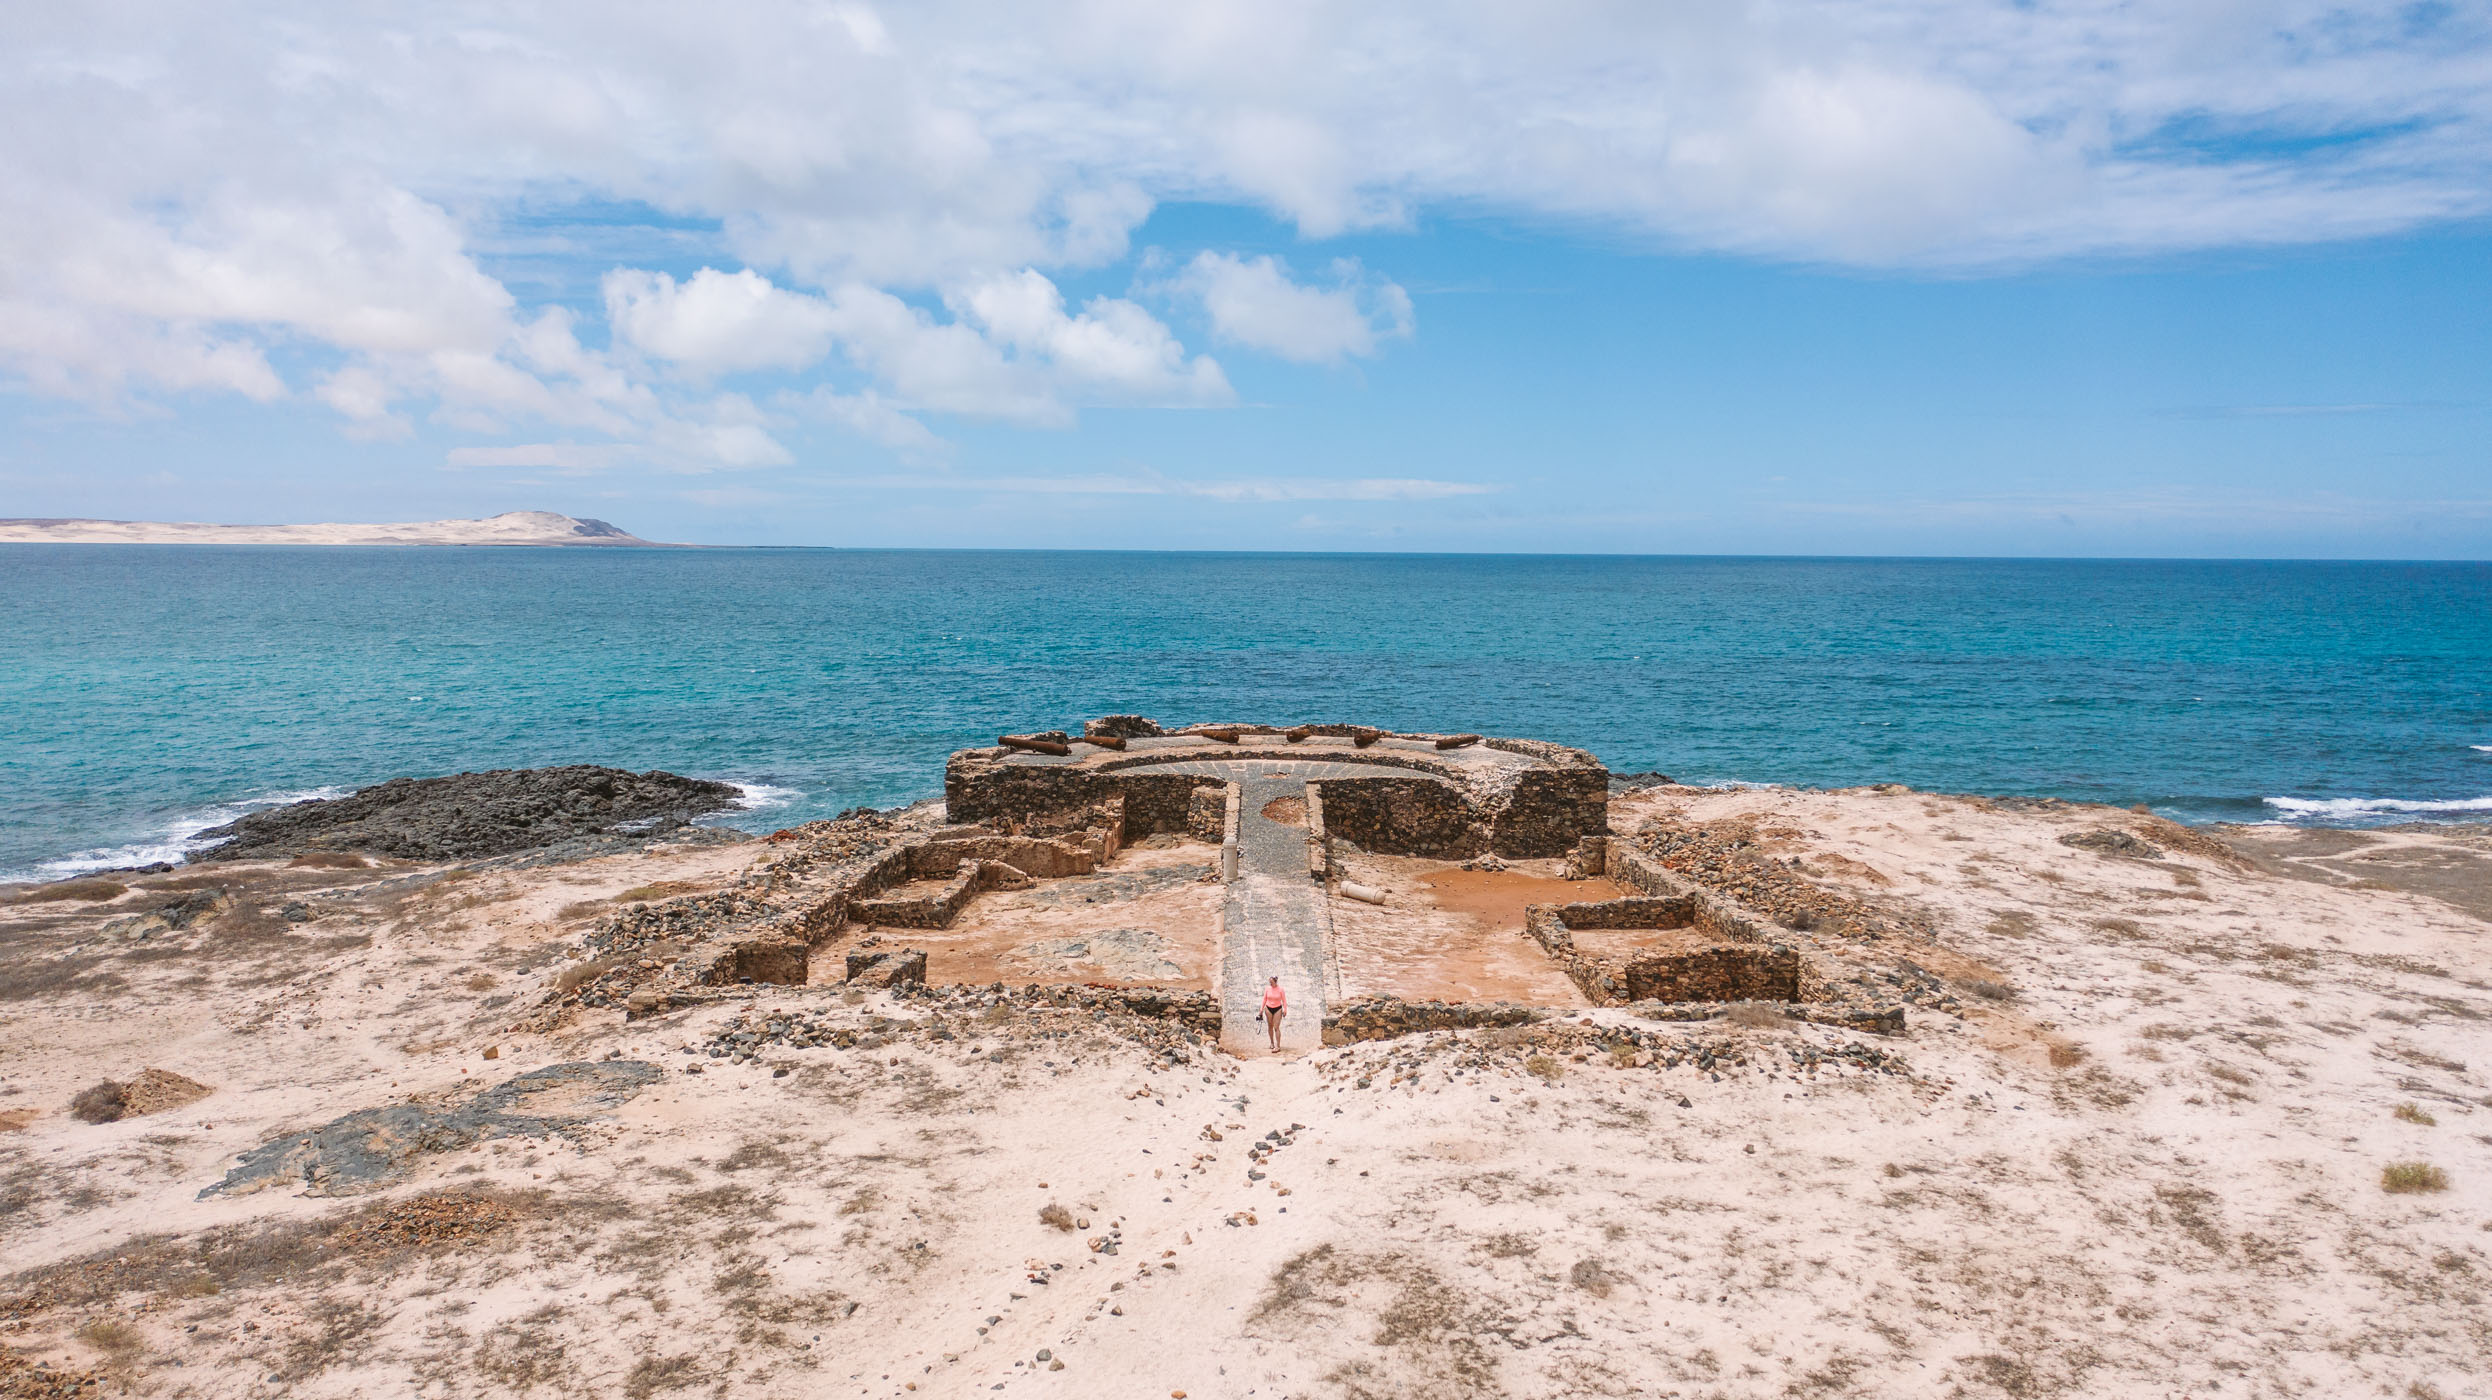 Forte Duque de Bragança on Ilhéu de Sal Rei at Boa Vista Cape Verde